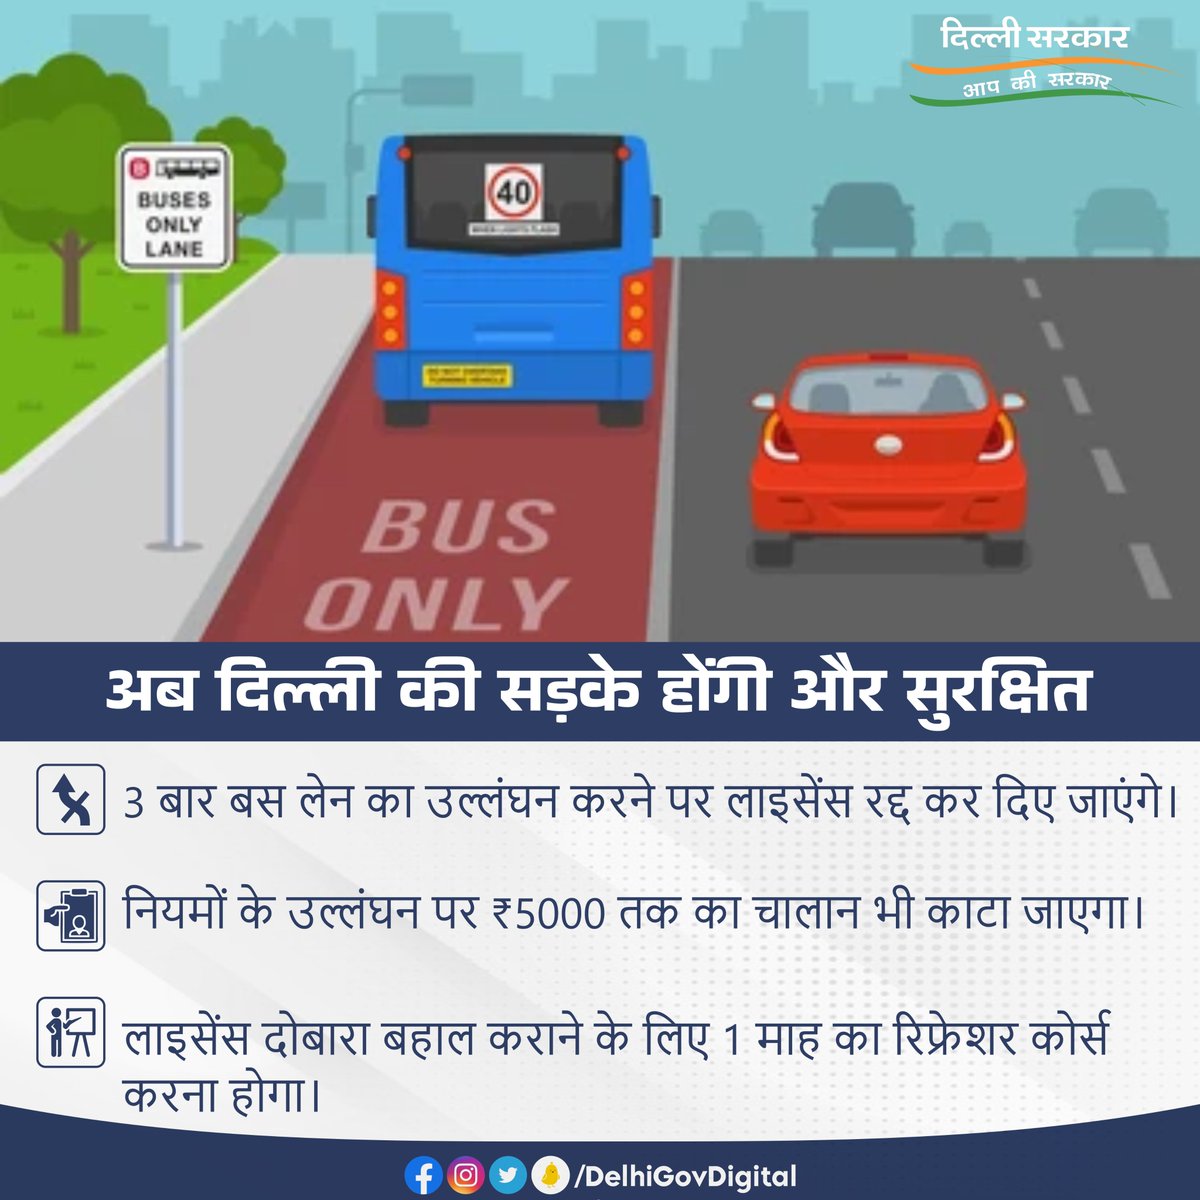 दिल्ली में बस लेन का तीन बार उल्लंघन करने पर ड्राइवर का लाइसेंस रद्द कर दिया जाएगा और 5000 रुपये का चालान भी कटेगा। @ArvindKejriwal @kgahlot @DDC_Delhi @TransportDelhi #Delhi #Transport #BusLane #Delhigram #DelhiGovt #DrivingLicense